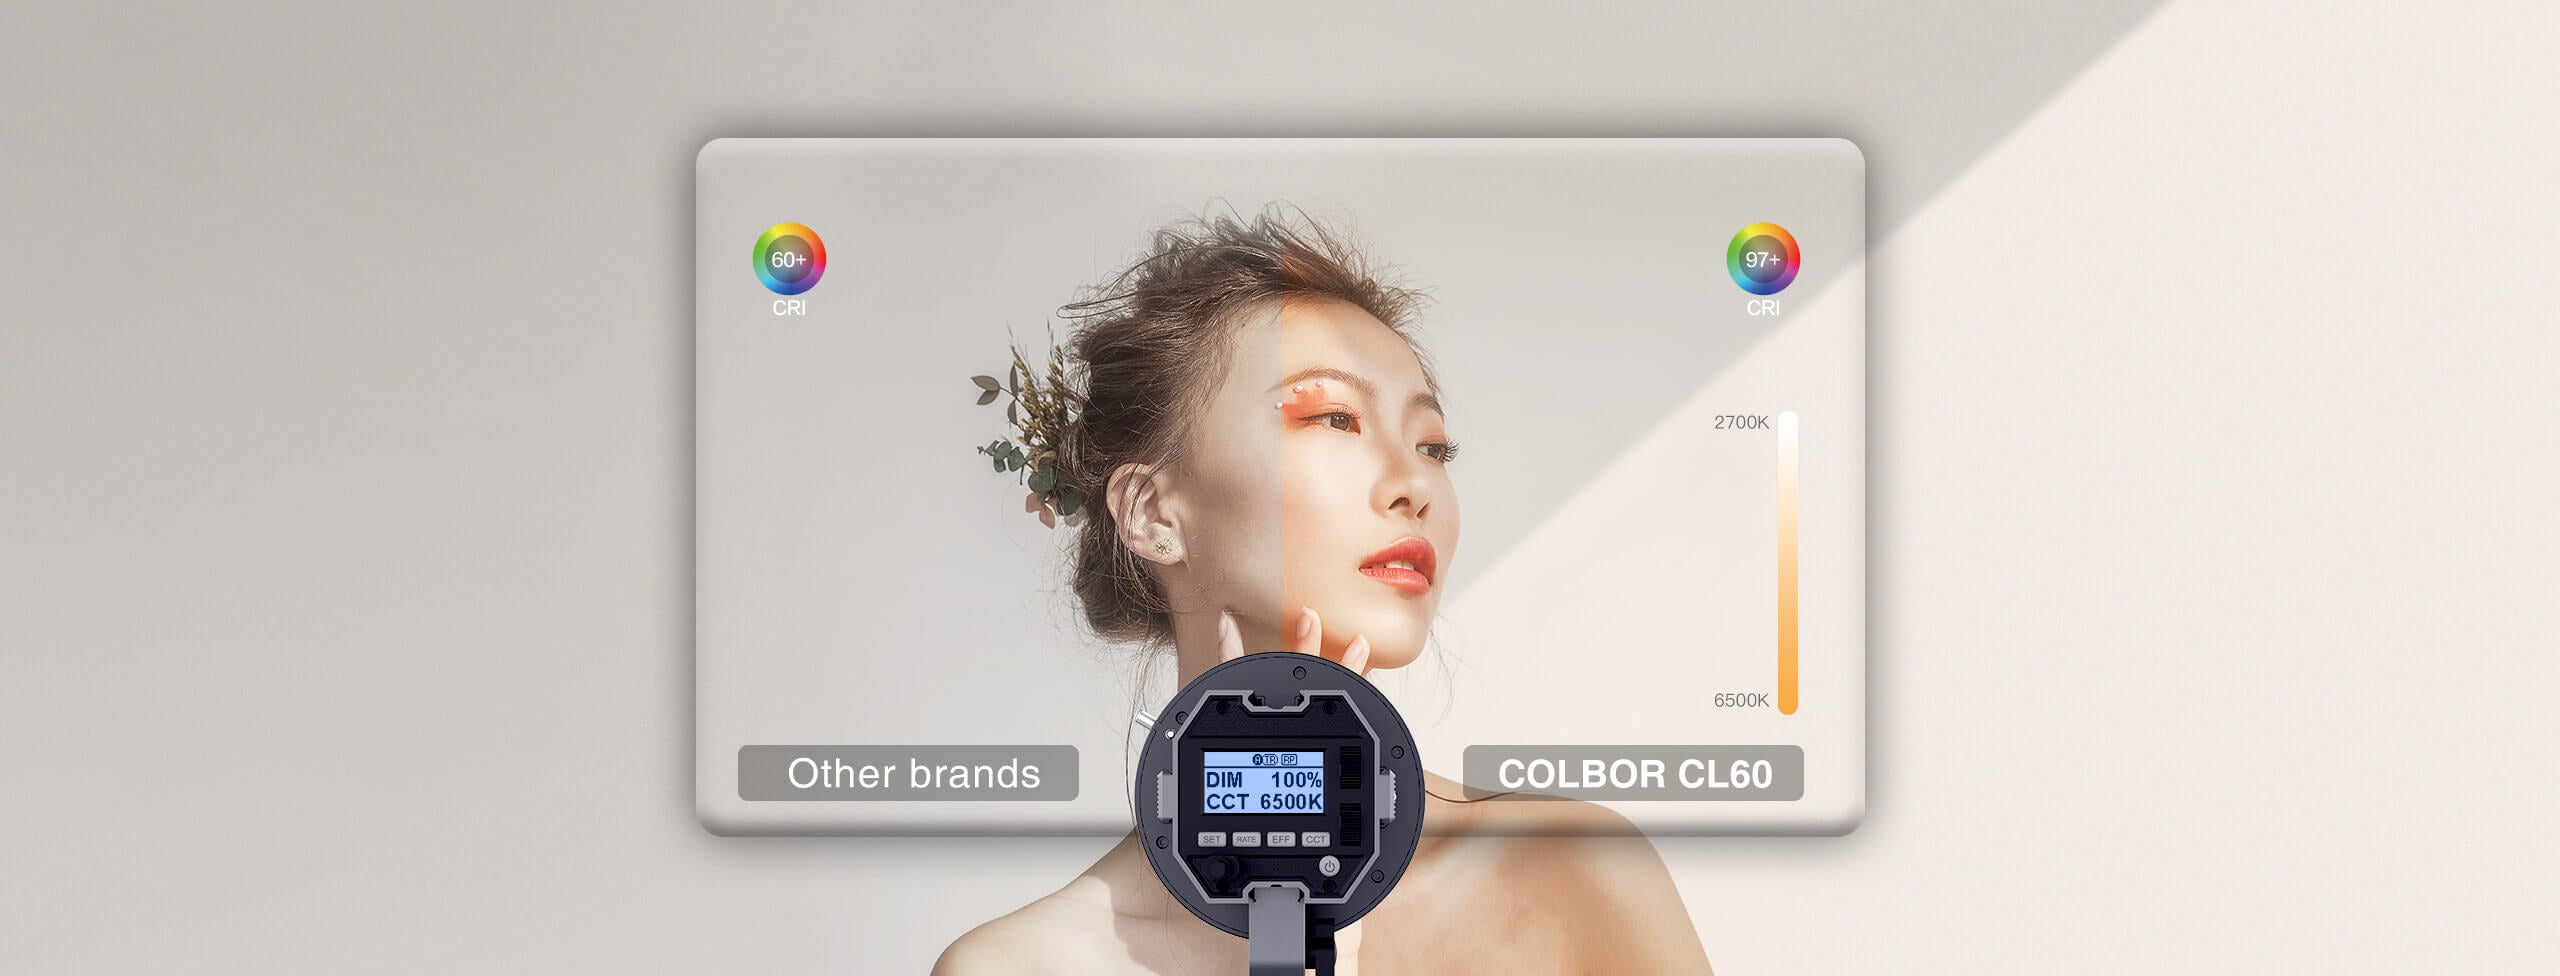 COLBOR CL60 menawarkan pencahayaan studio untuk video produk pada 97+ CRI dan suhu warna 2700-6500K.